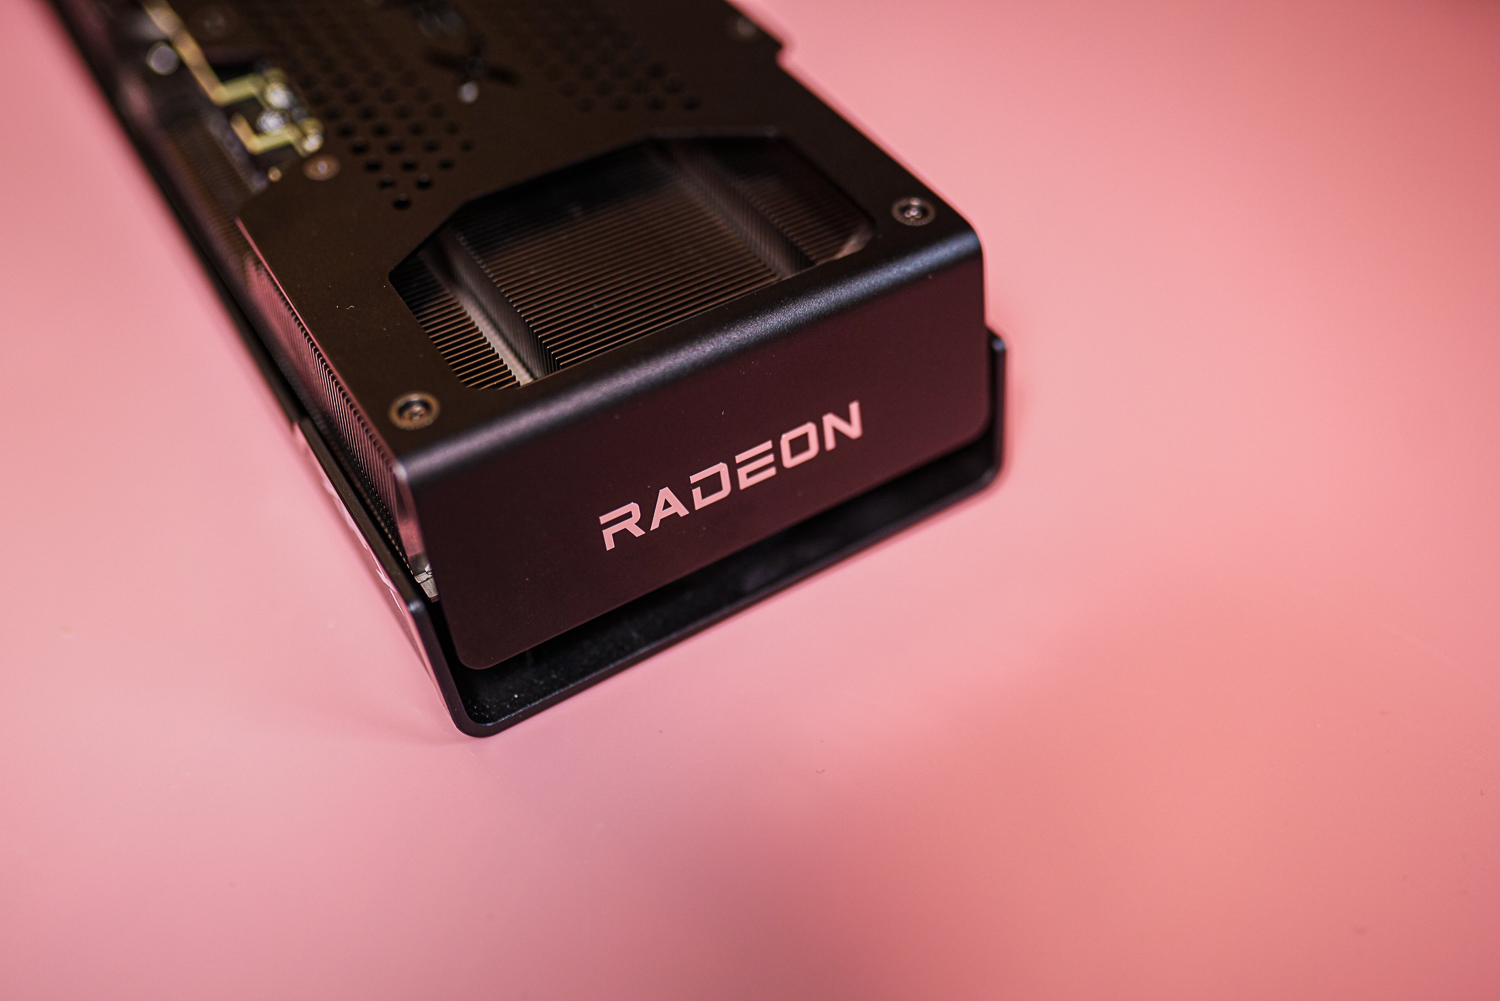 Логотип Radeon на видеокарте RX 7600 XT.